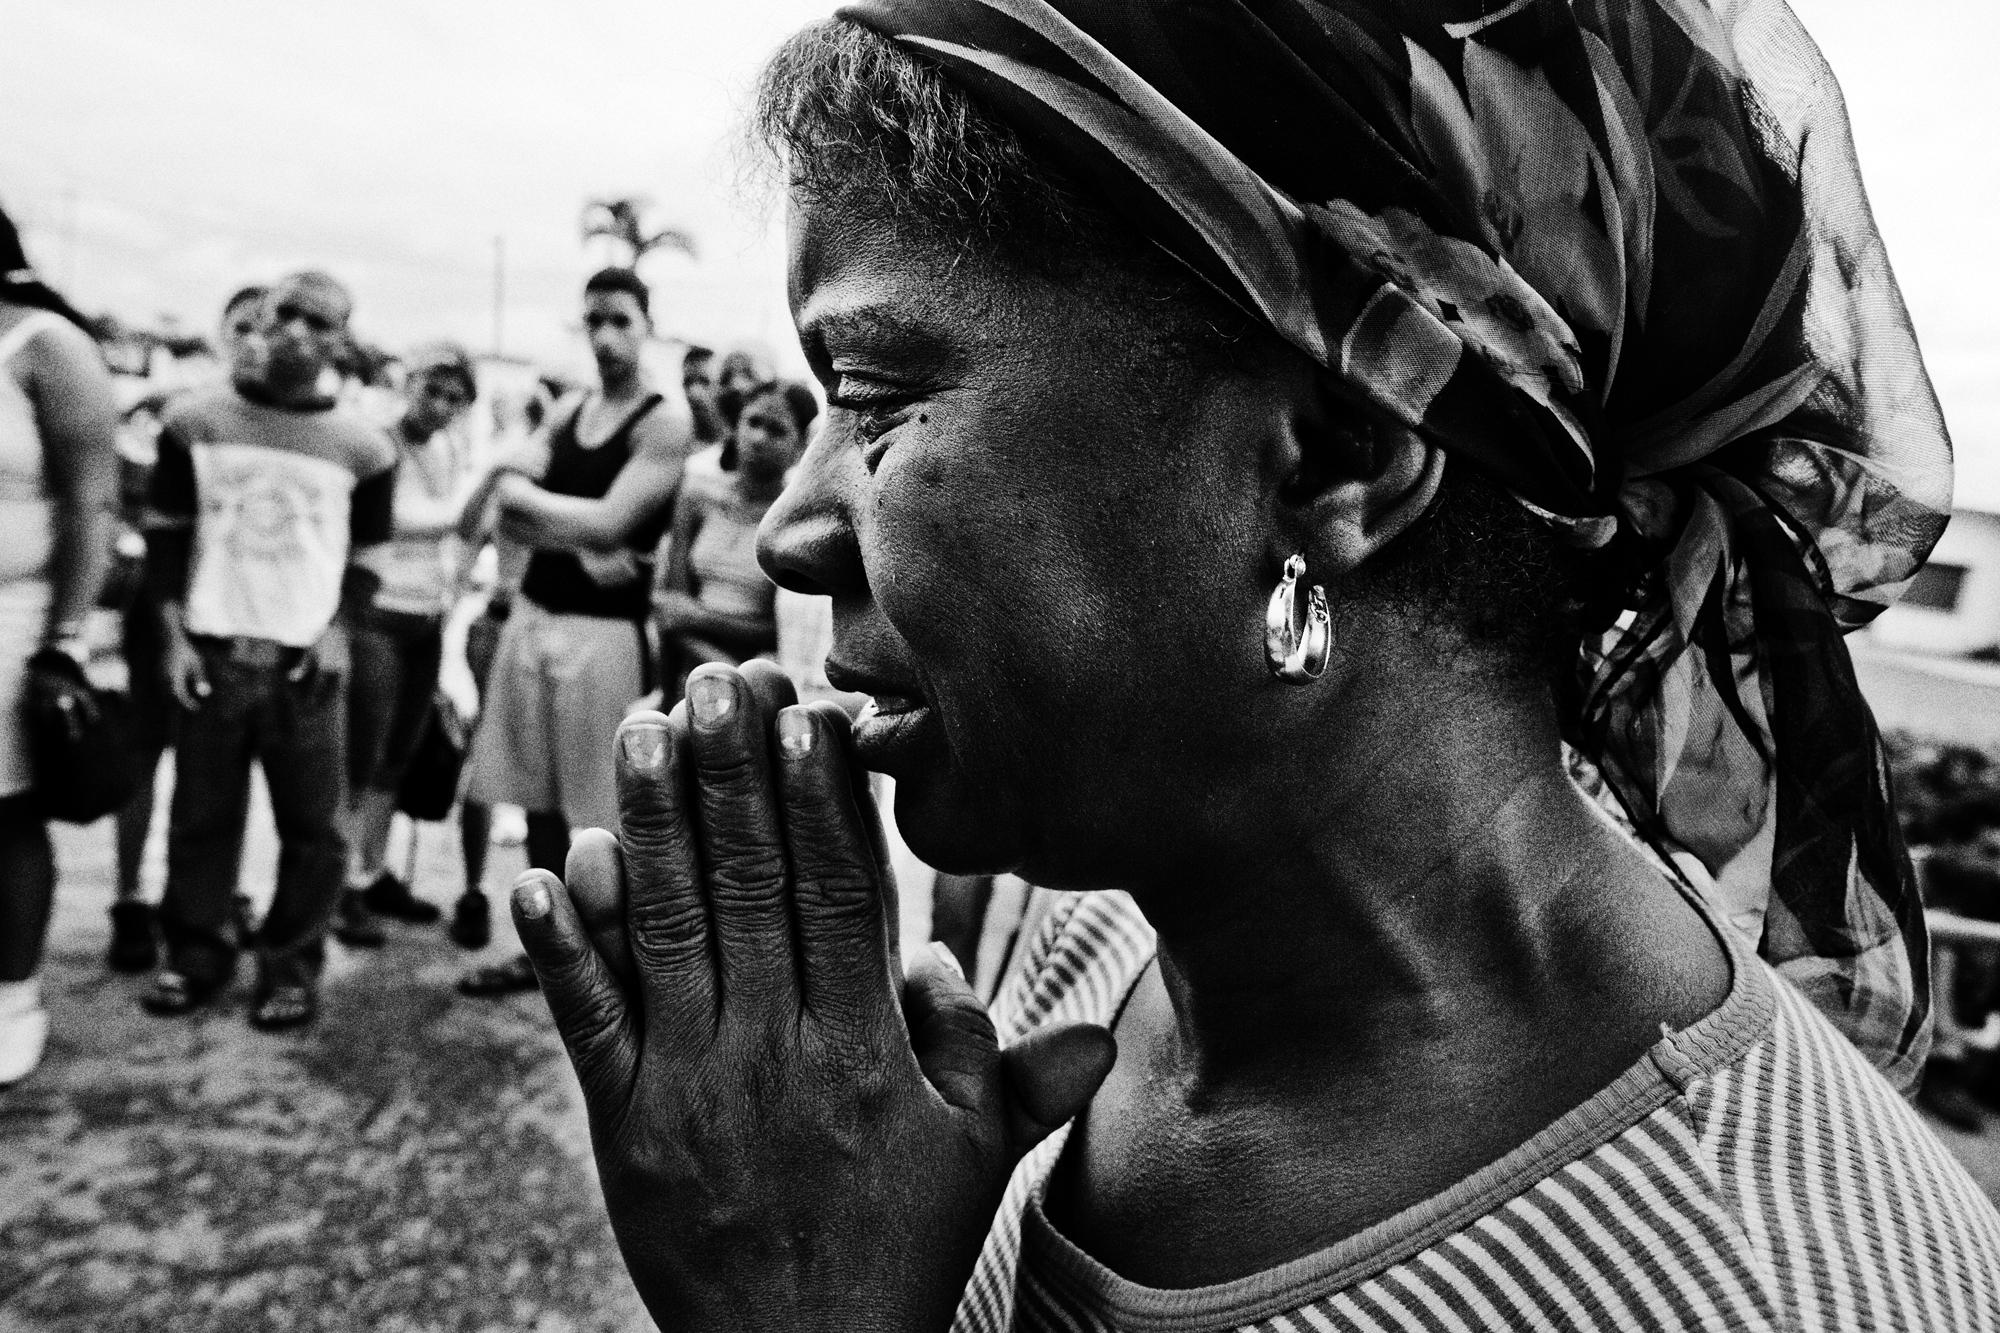 San Lázaro  - Cuba, El Rincon (Santiago de la Vega). A woman is praying...